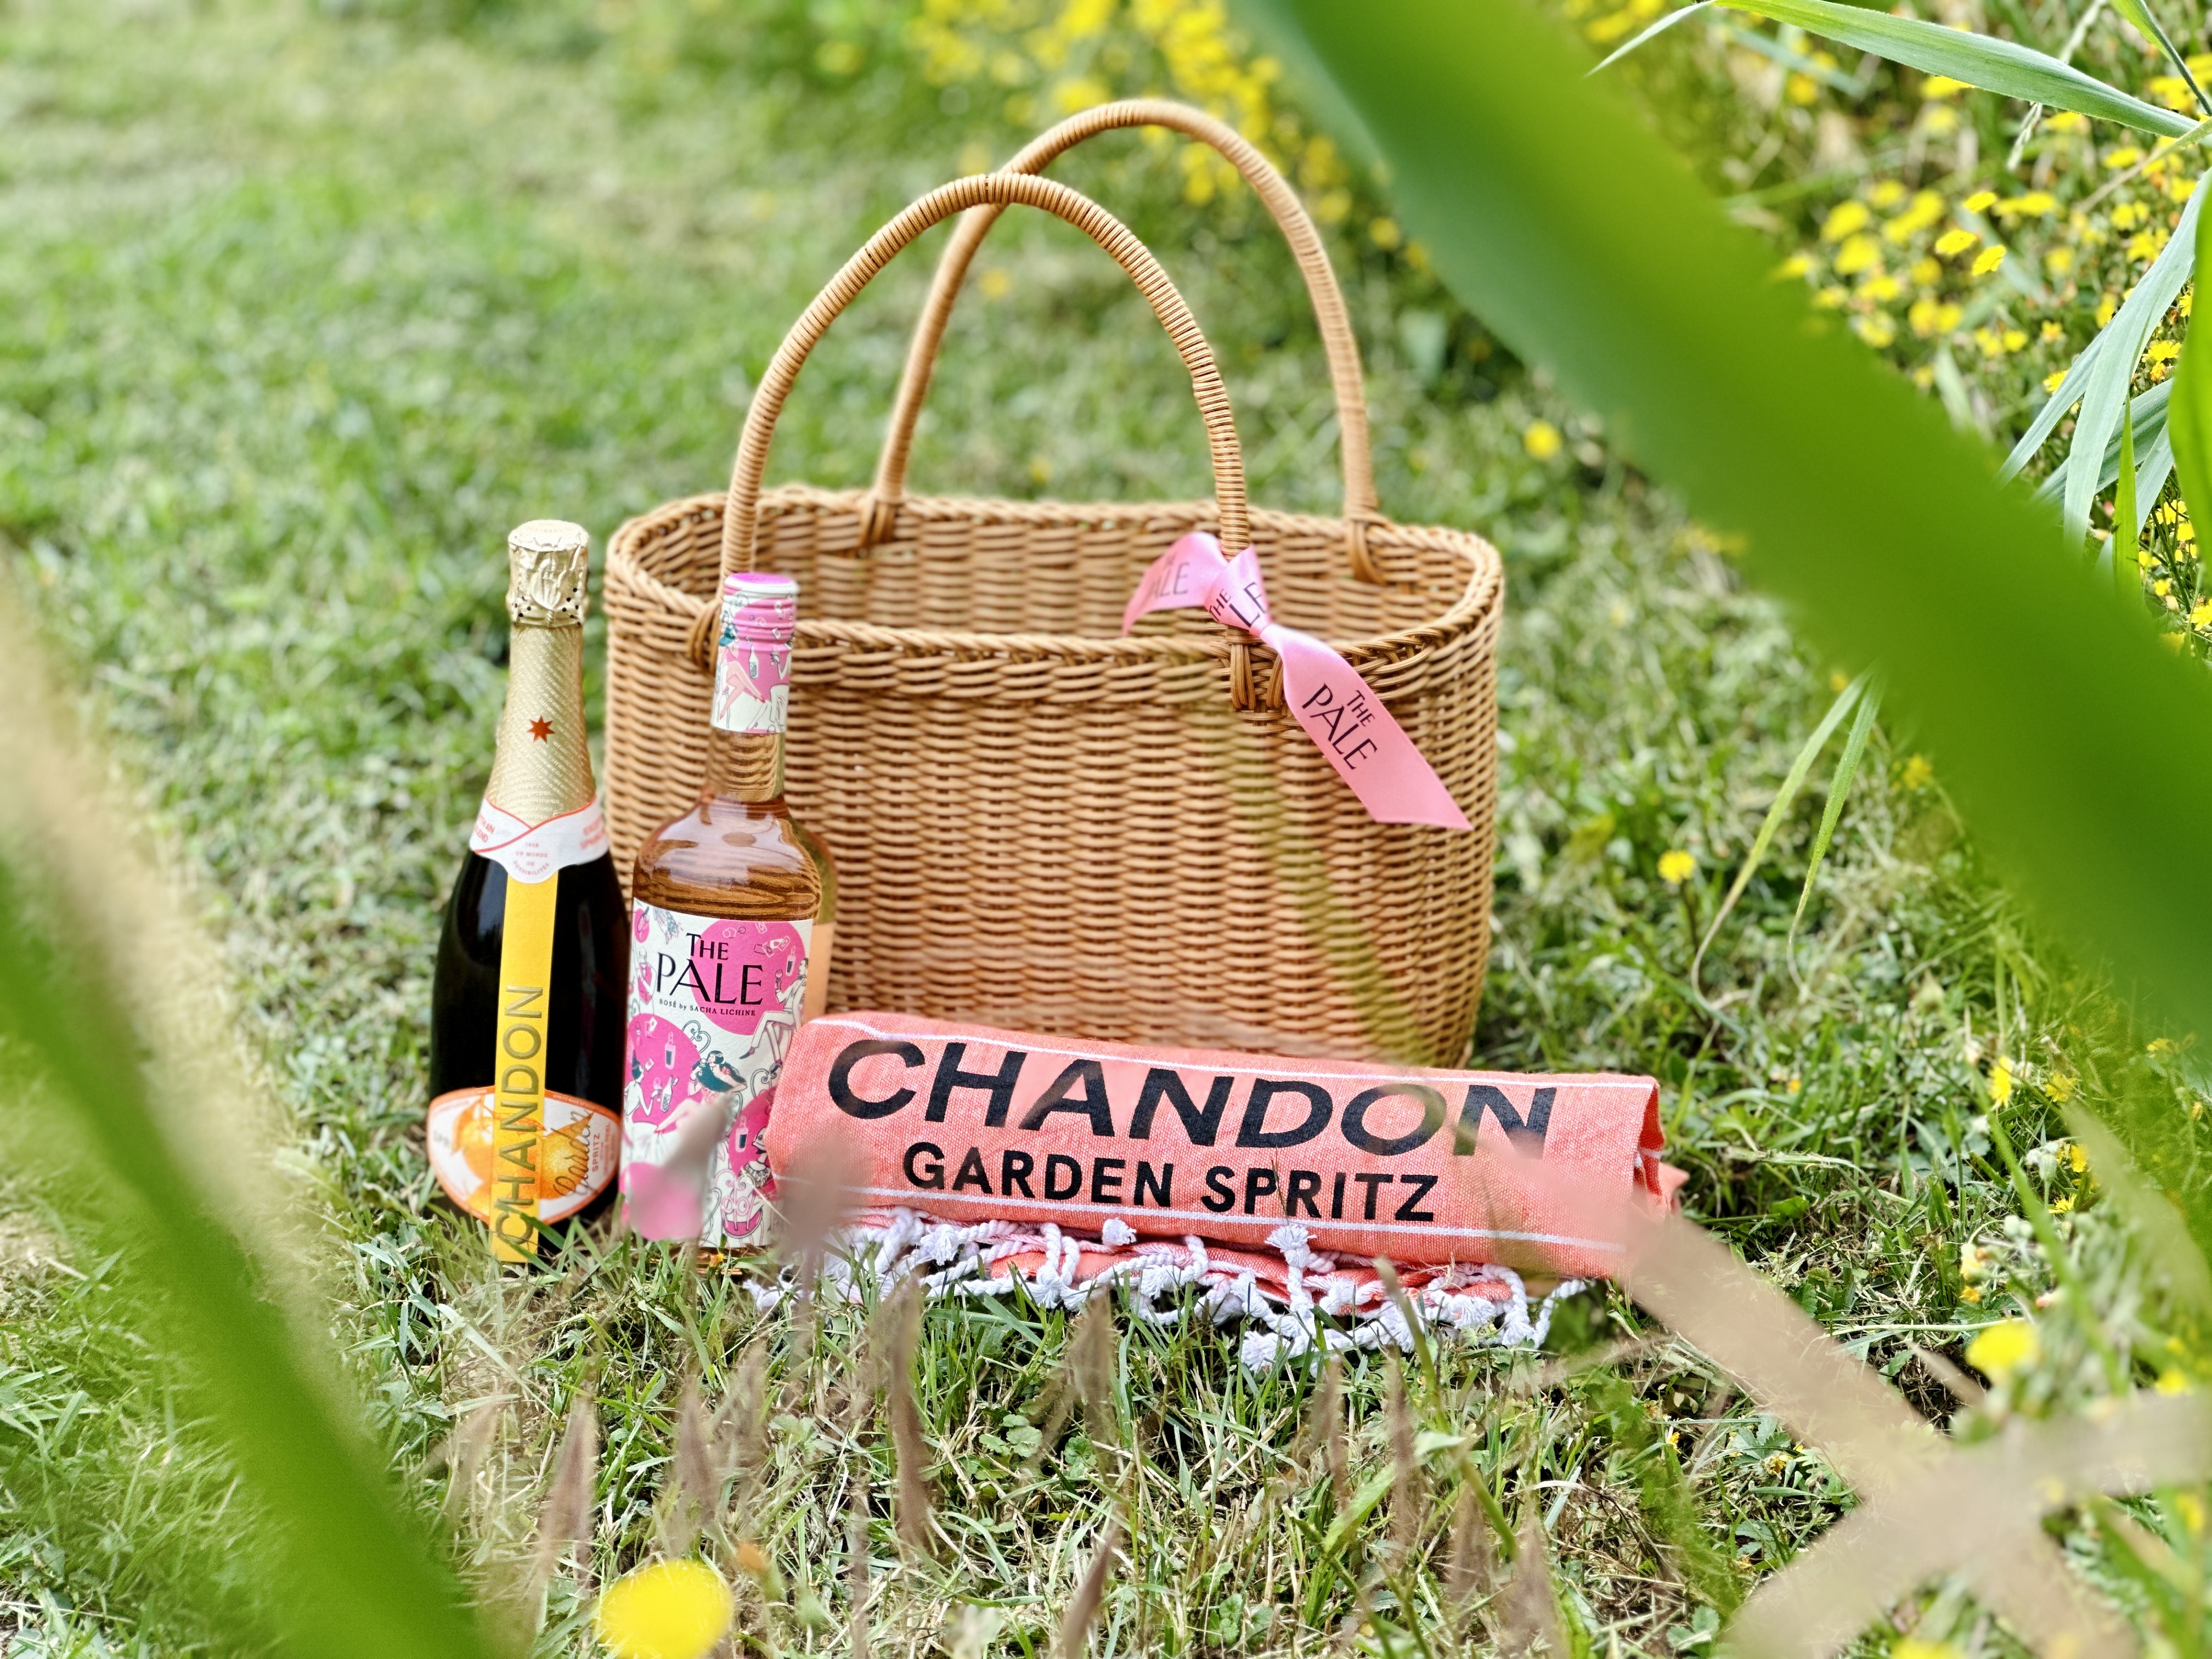 Chandon Garden spritz